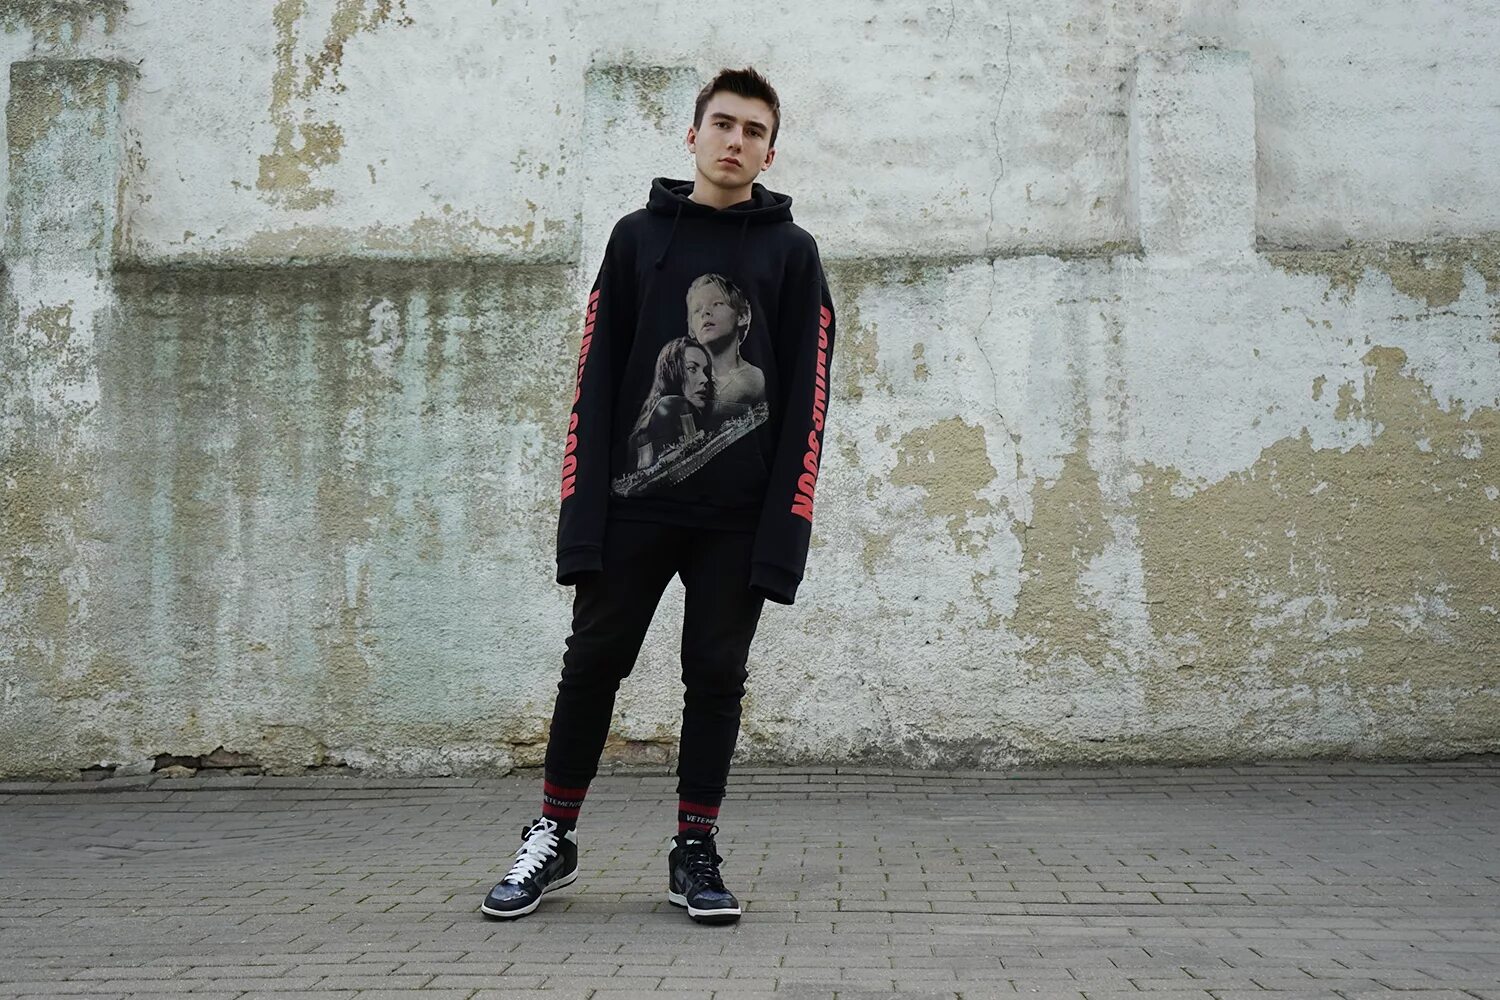 Хайповые песни. Фото про Соловьева Никиту. Одежда Фила из трудных подростков. Обладает стиль одежды.